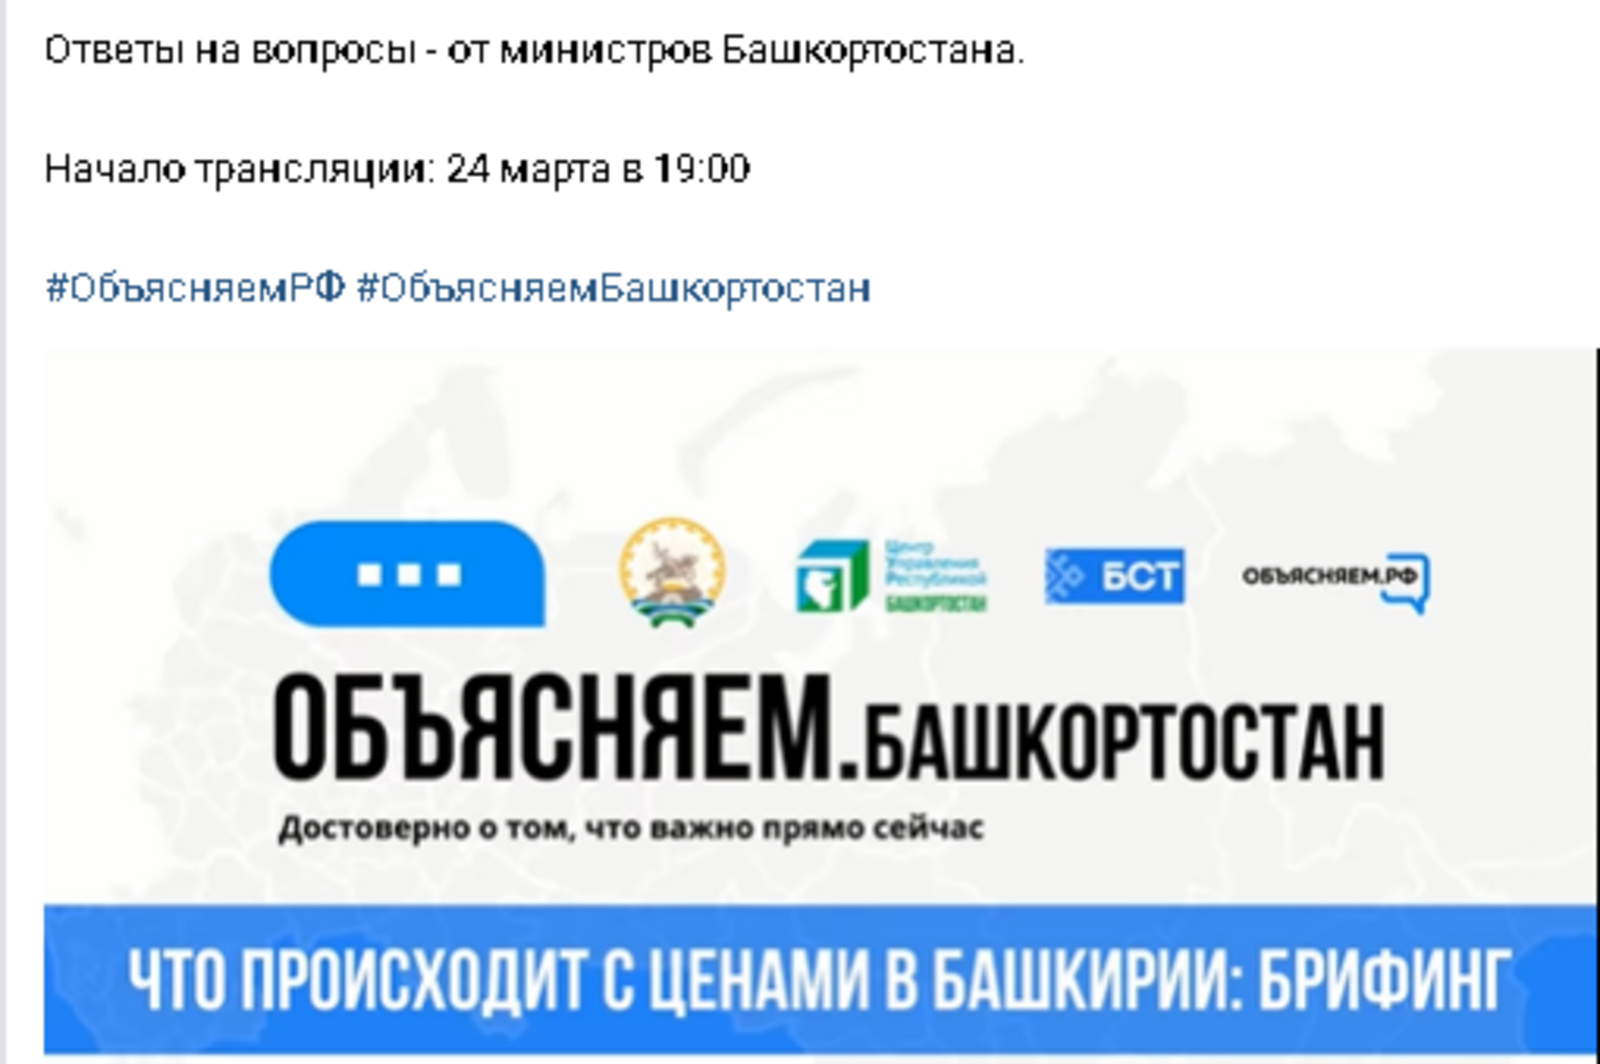 Брифинг в рамках проекта #Объясняем_Башкортостан:  В республике ежедневно фиксируется порядка 700 новых случаев коронавирусной инфекции